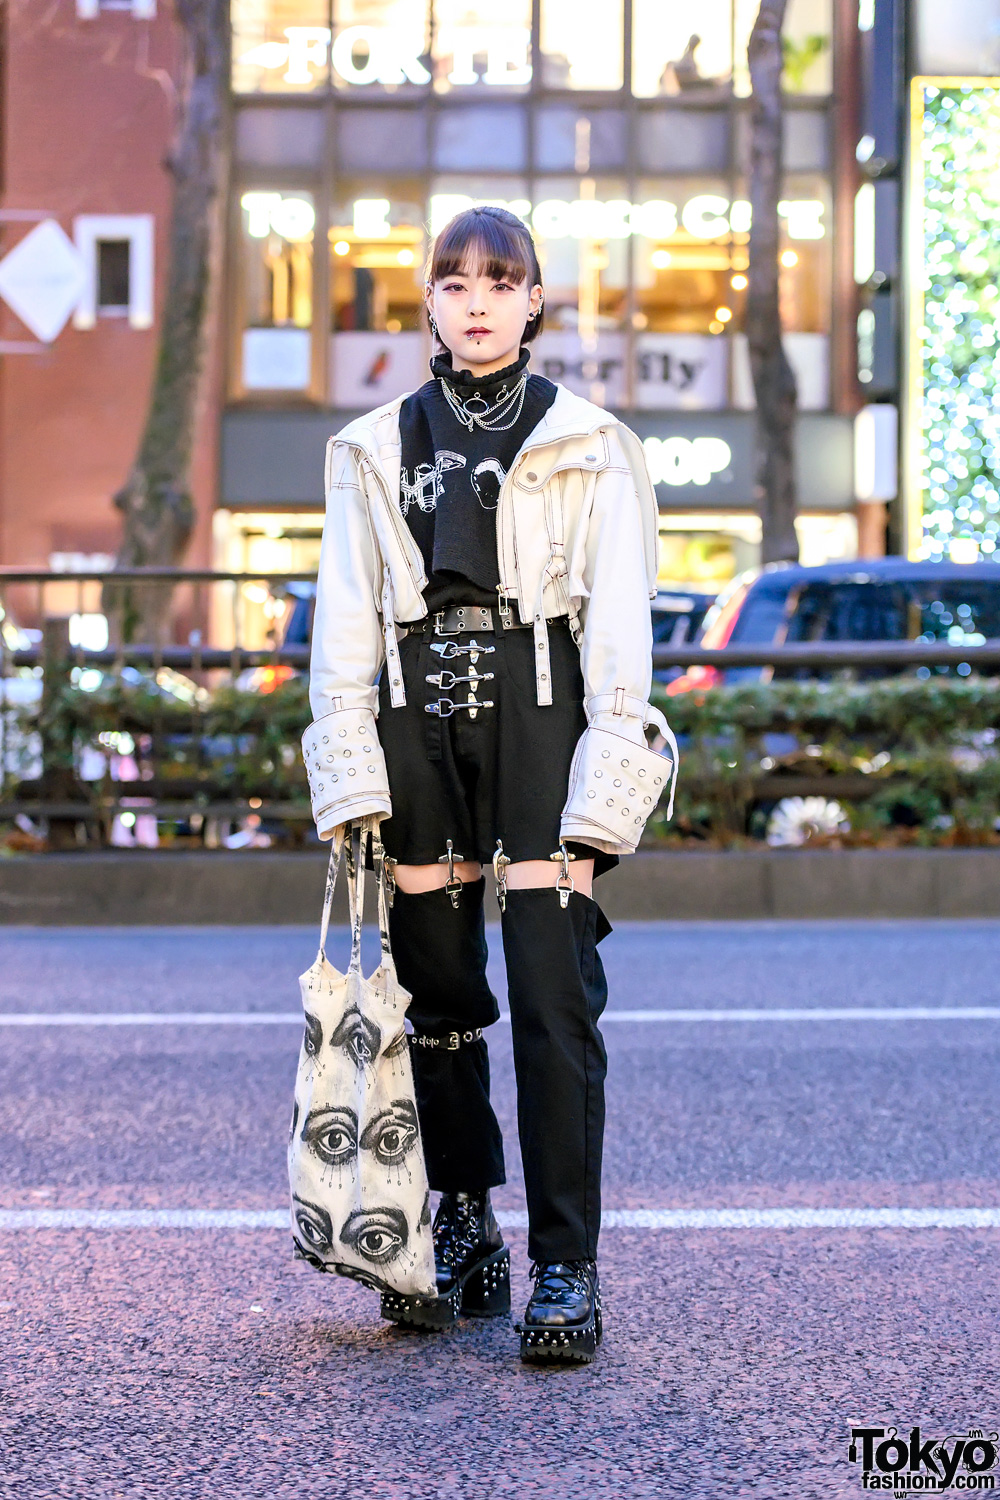 Harajuku Girl in MYOB NYC Fireman Joint Pants, Oversized Sleeve Jacket, Piercings & Studded Boots